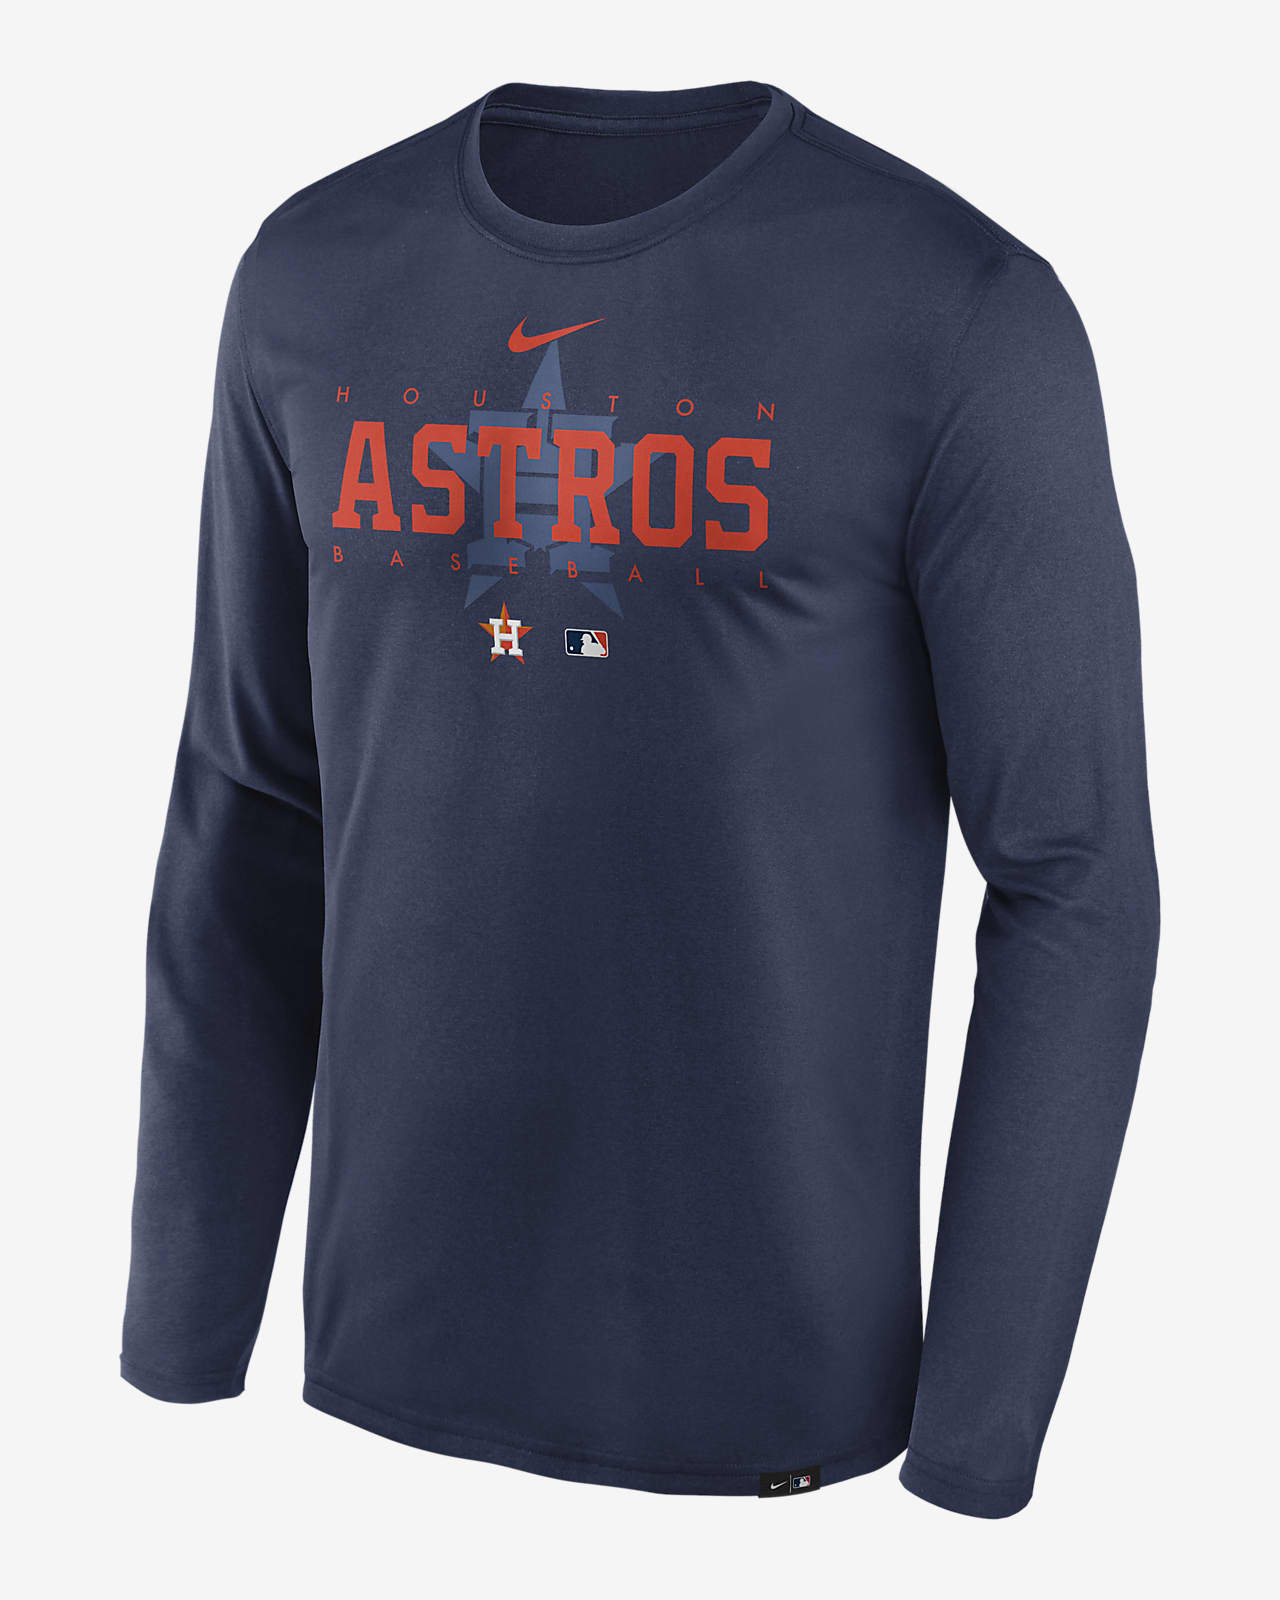 MLB Houston Astros Men's Long Sleeve T-Shirt - S